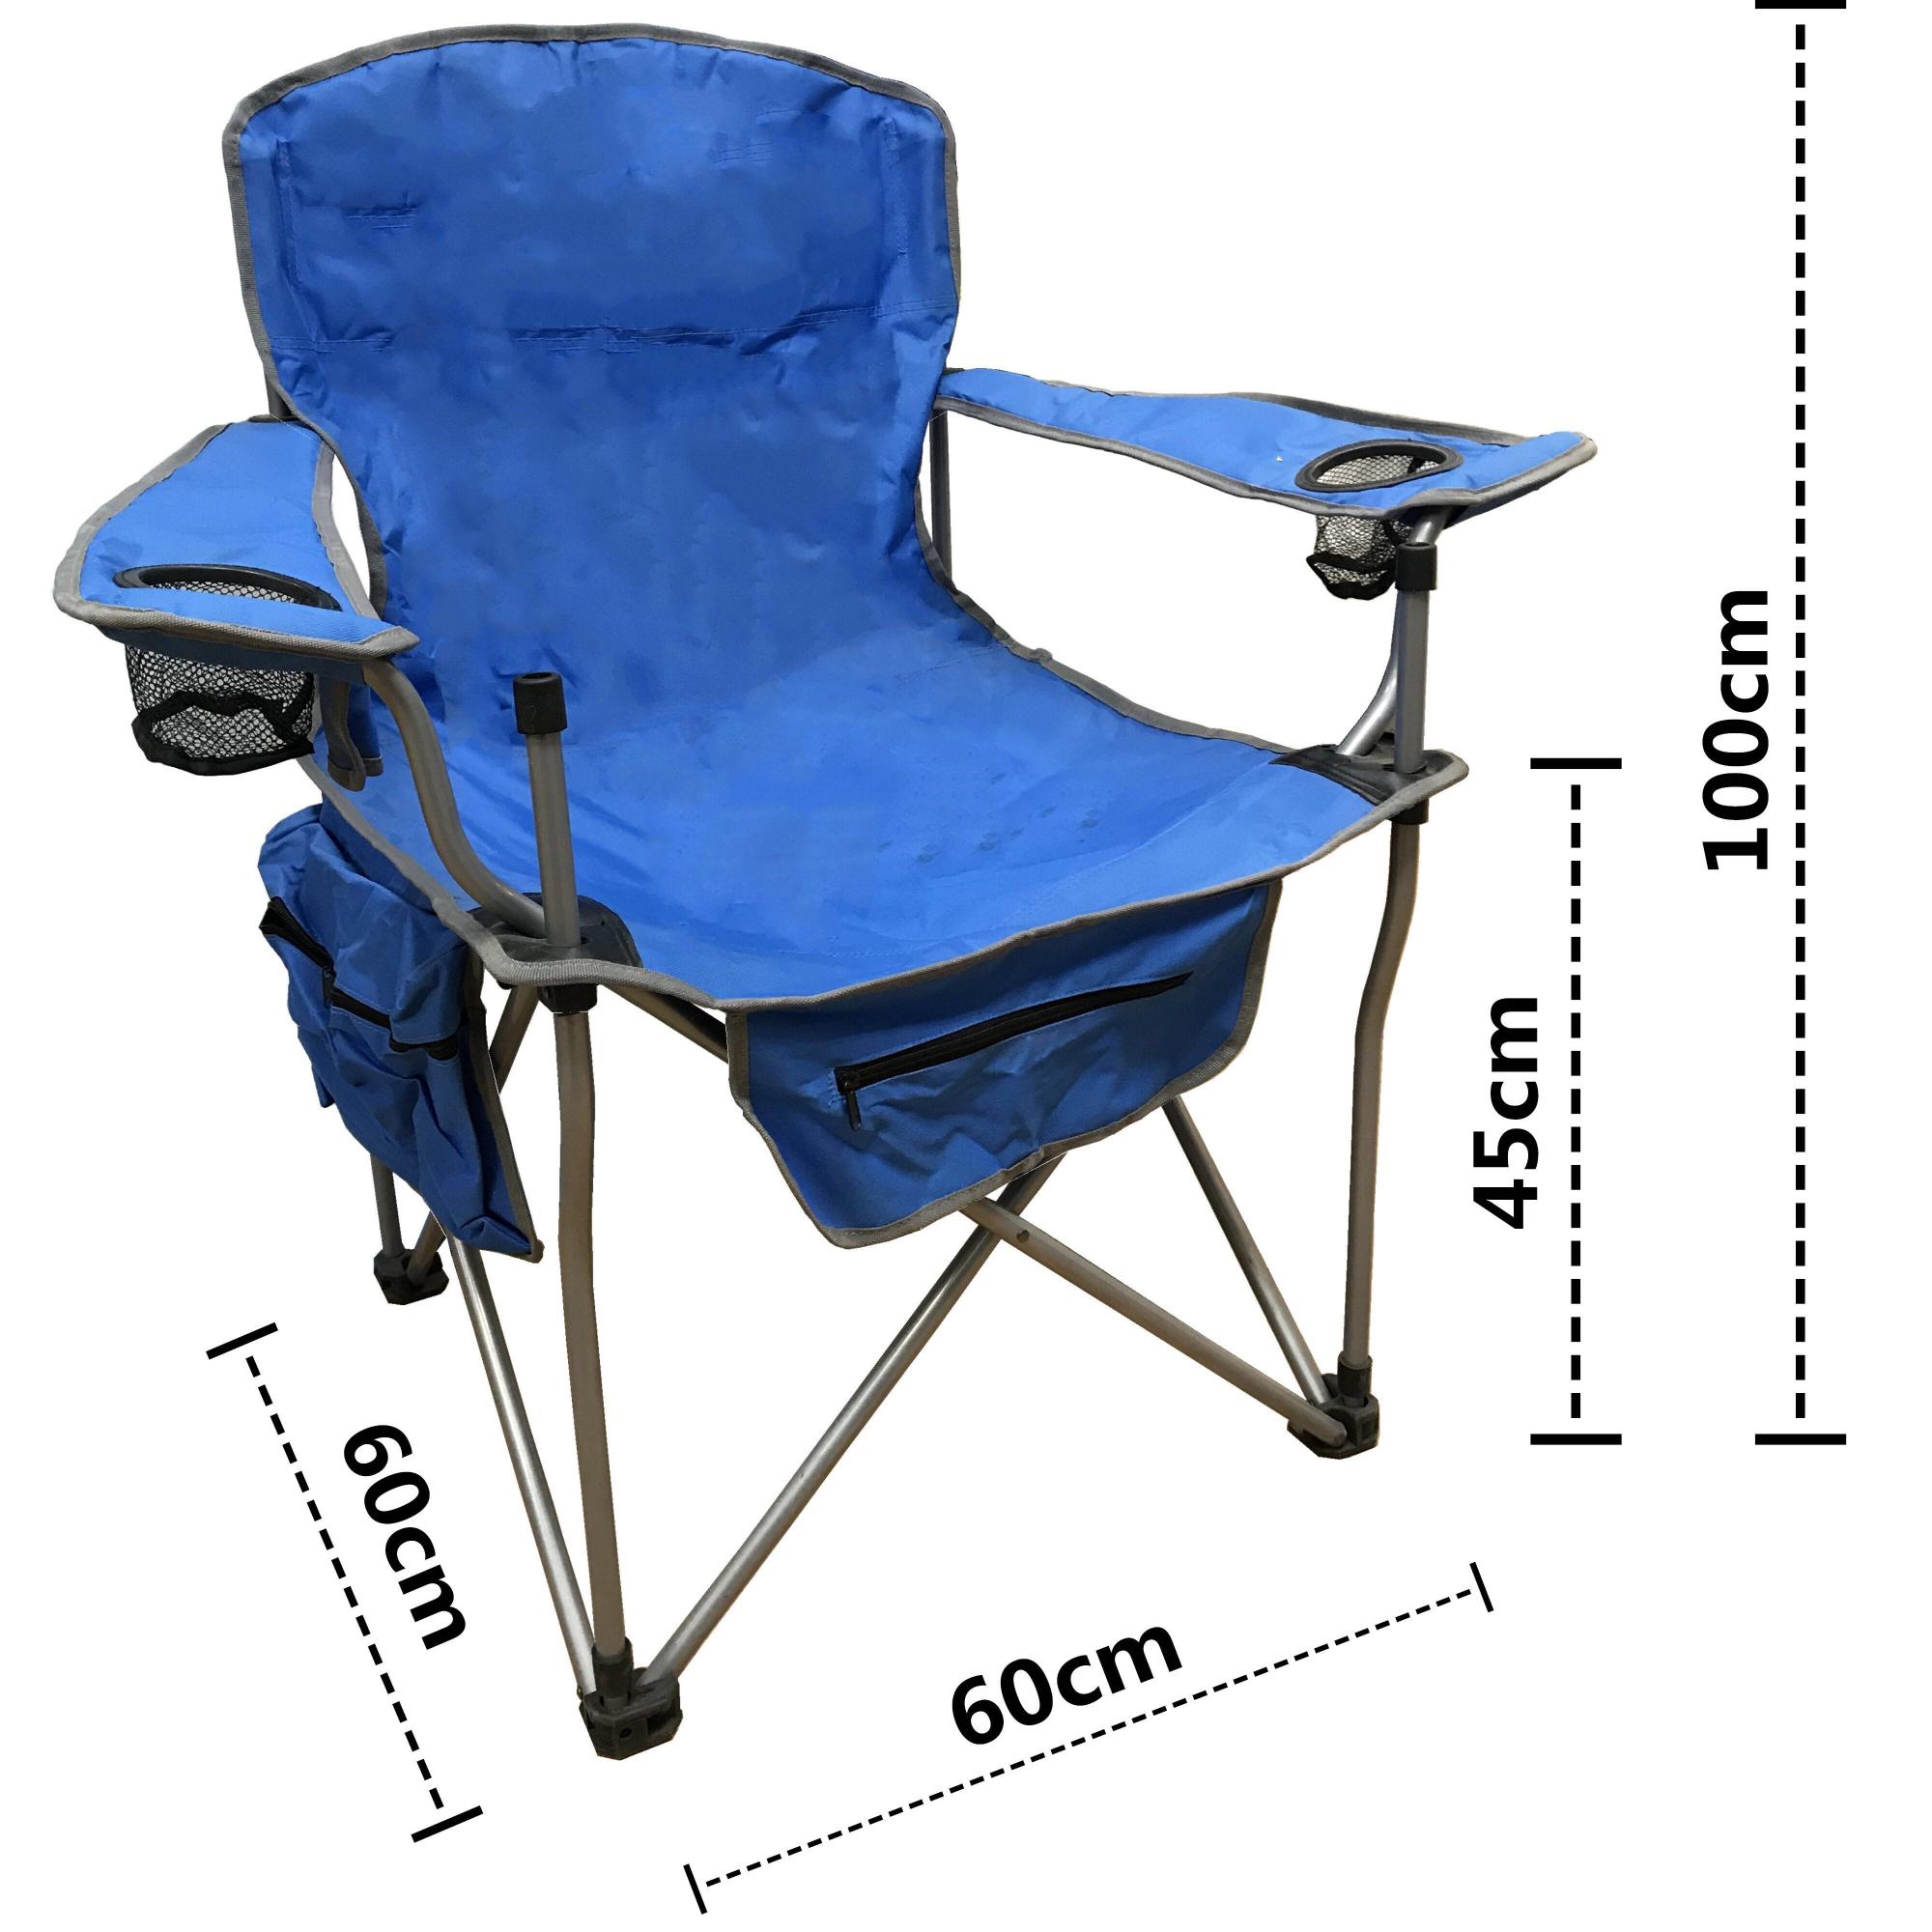 Кресло туристическое складное с подлокотниками. Кресло складное COOLWALK 5660. Кресло складное к 302, 52 х 56 х 90 см, цвет Blue. Стул COOLWALK рыболовный. Mifine 55071 кресло.